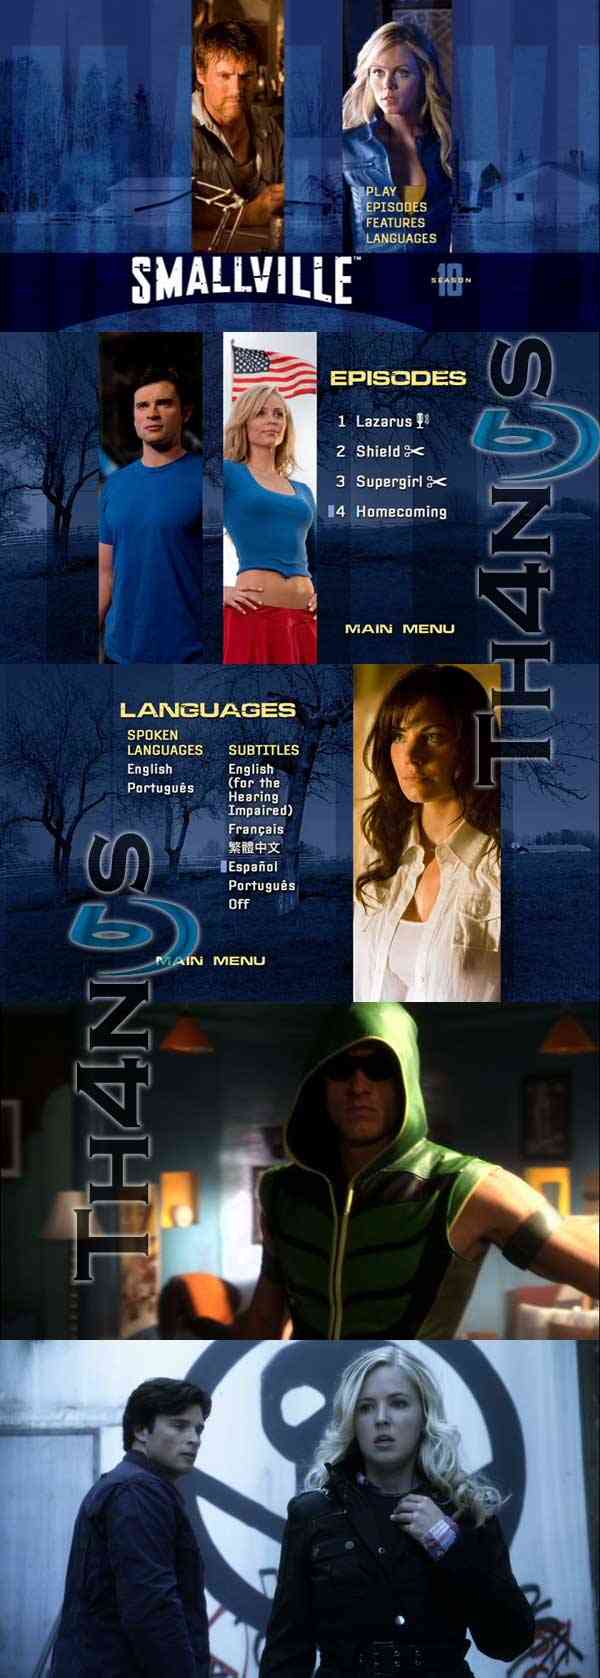 "Smallville Season 10 DVD"